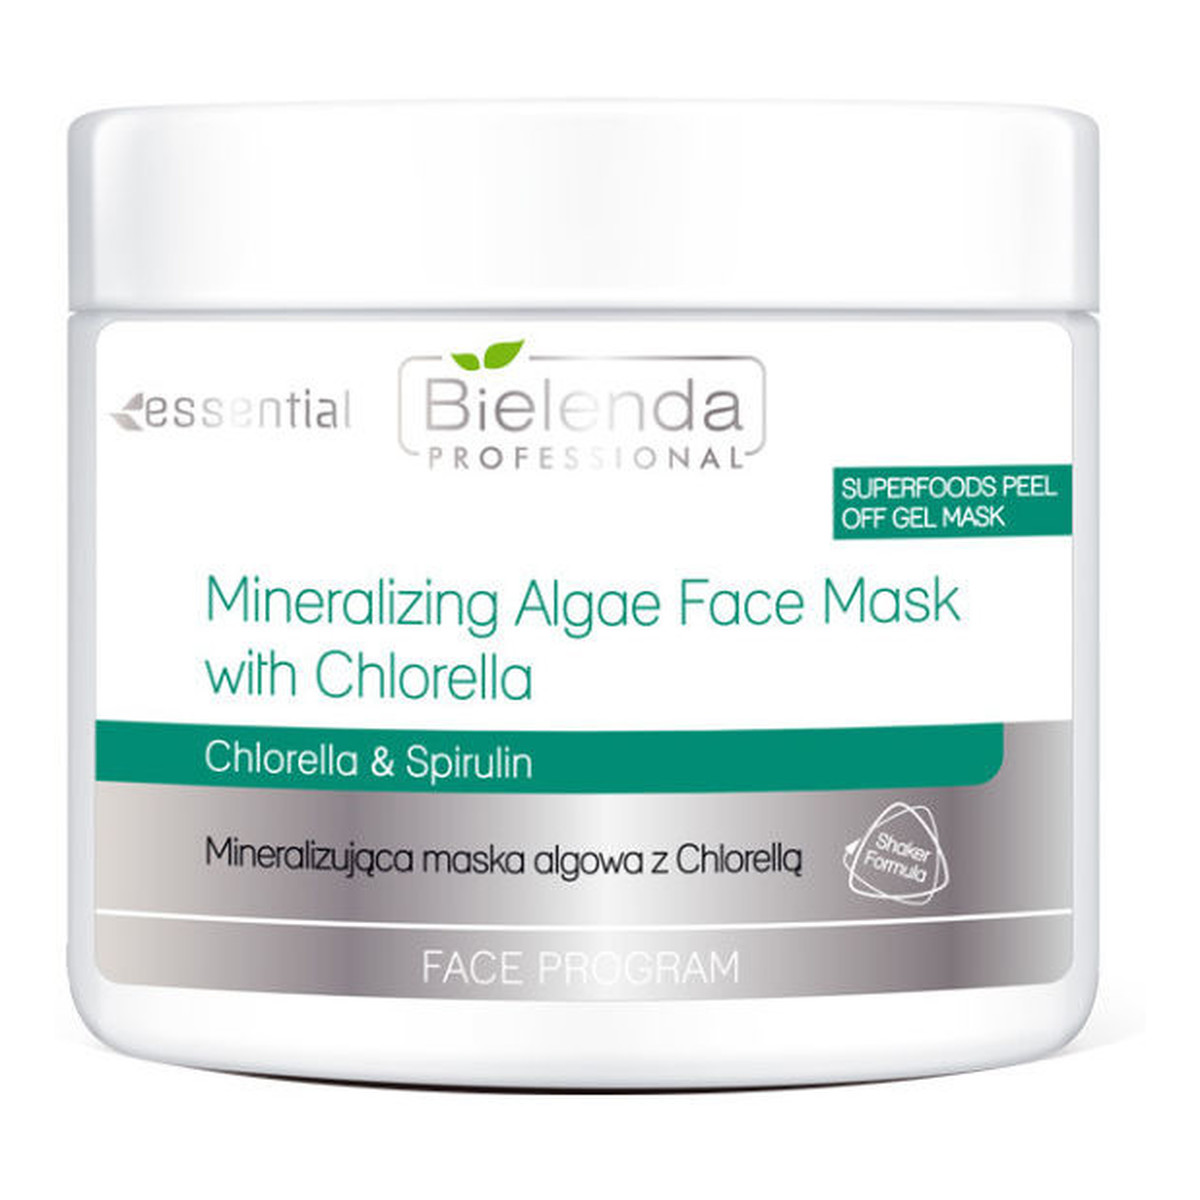 Bielenda Professional Face Program mineralizująca maska algowa z Chlorellą 200g